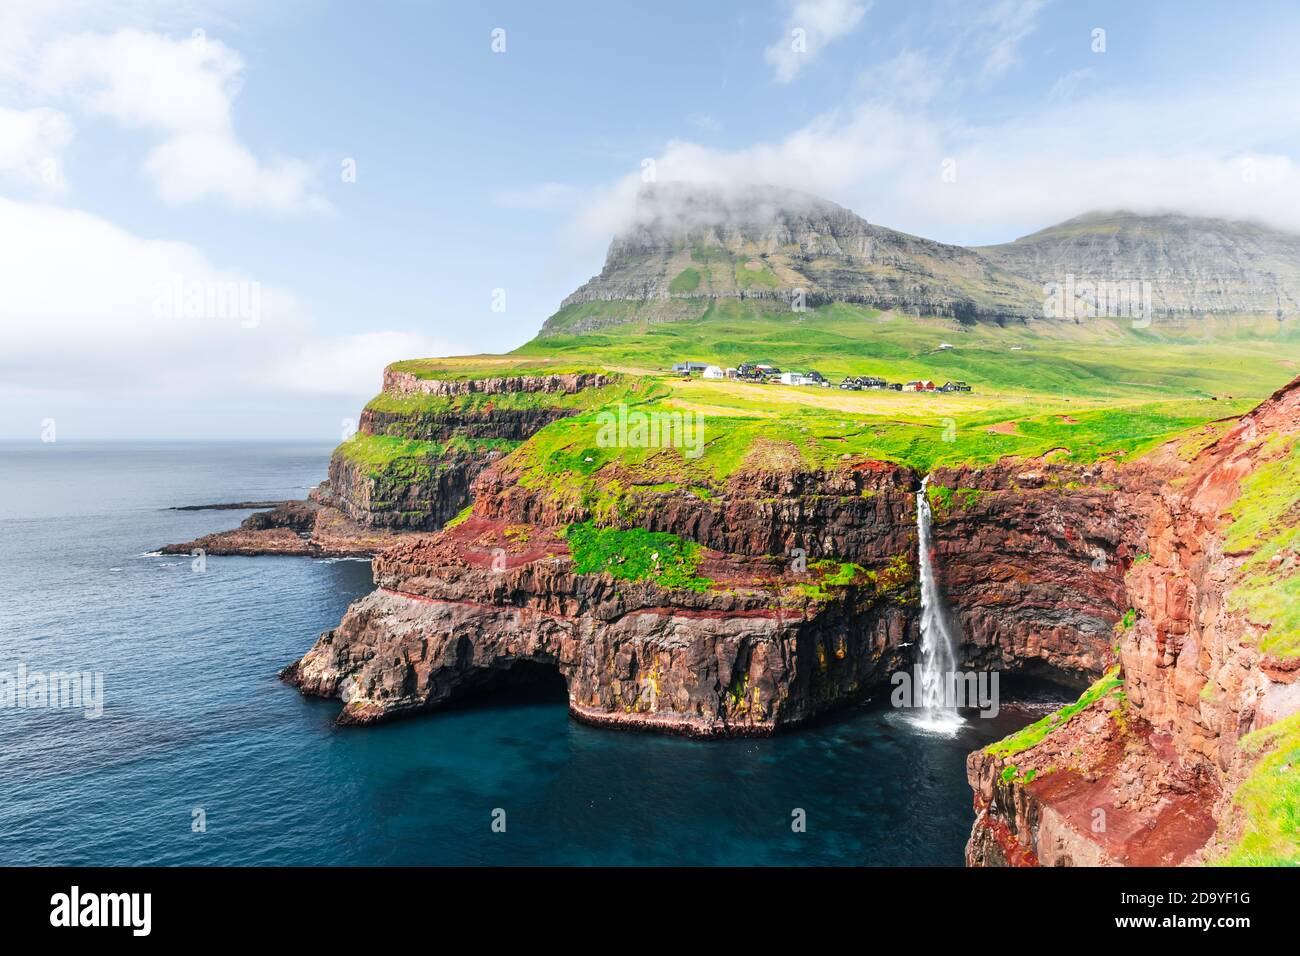 Incredibile vista autunnale della cascata di Mulafossur nel villaggio di Gasadalur, Vagar Island of the Faroe Islands, Denmark. Fotografia di paesaggio Foto Stock